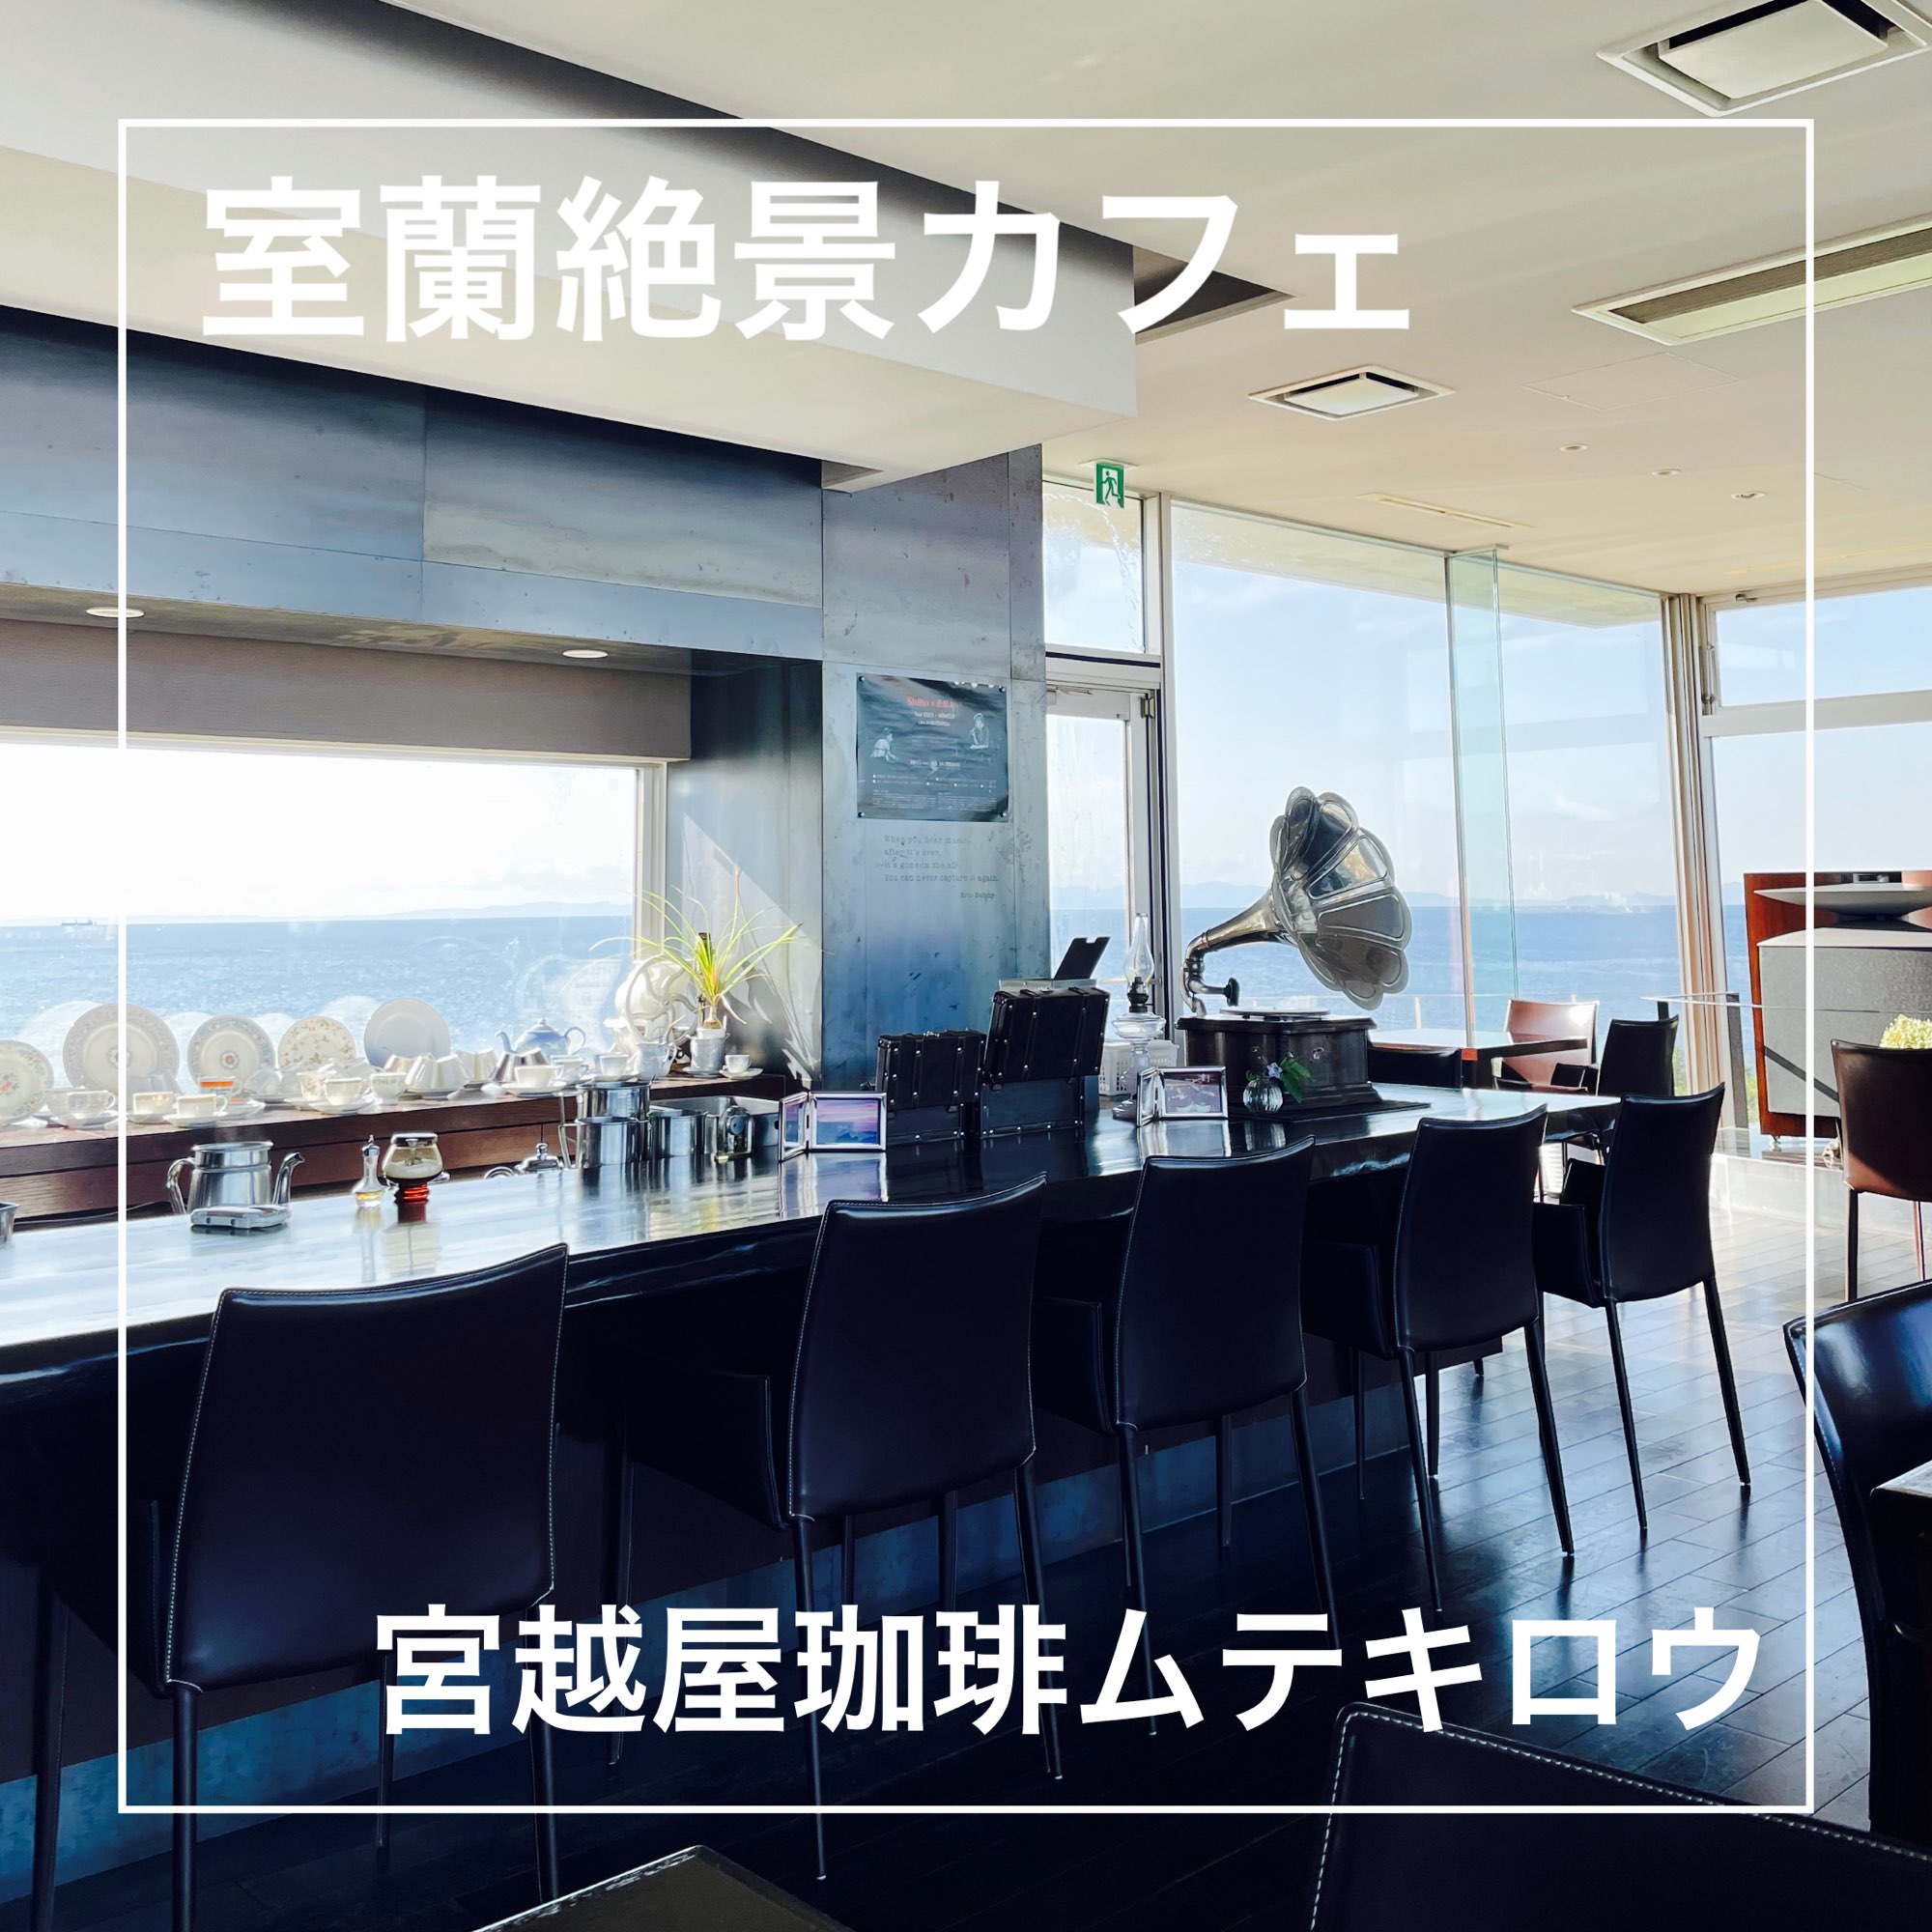 【北海道:室兰】在室兰人气咖啡厅享用特别咖啡